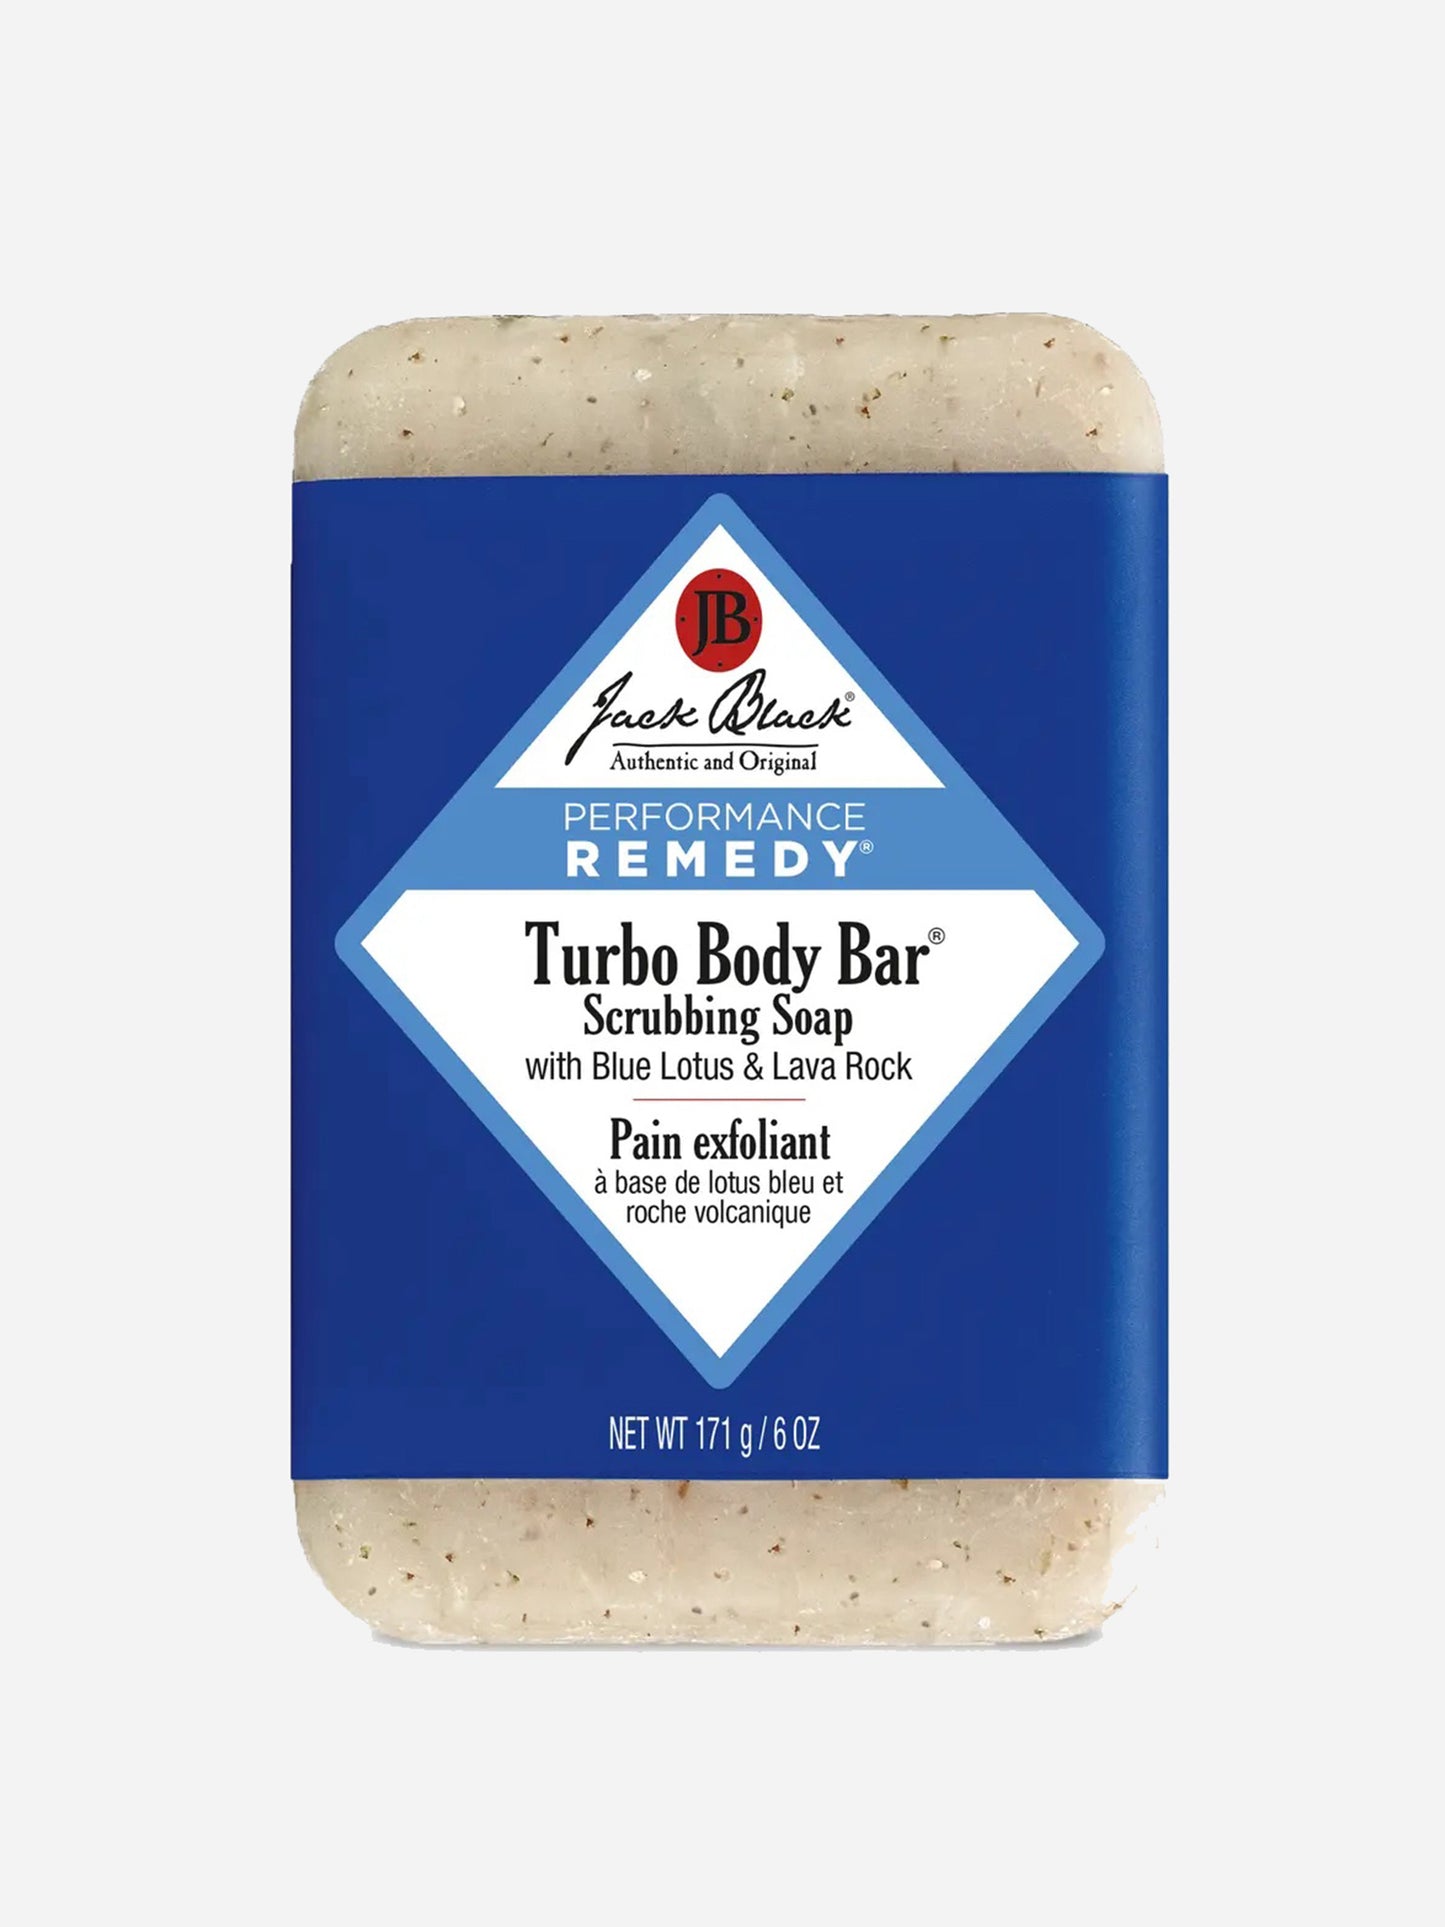 Jack Black Turbo Body Bar® Scrubbing Soap